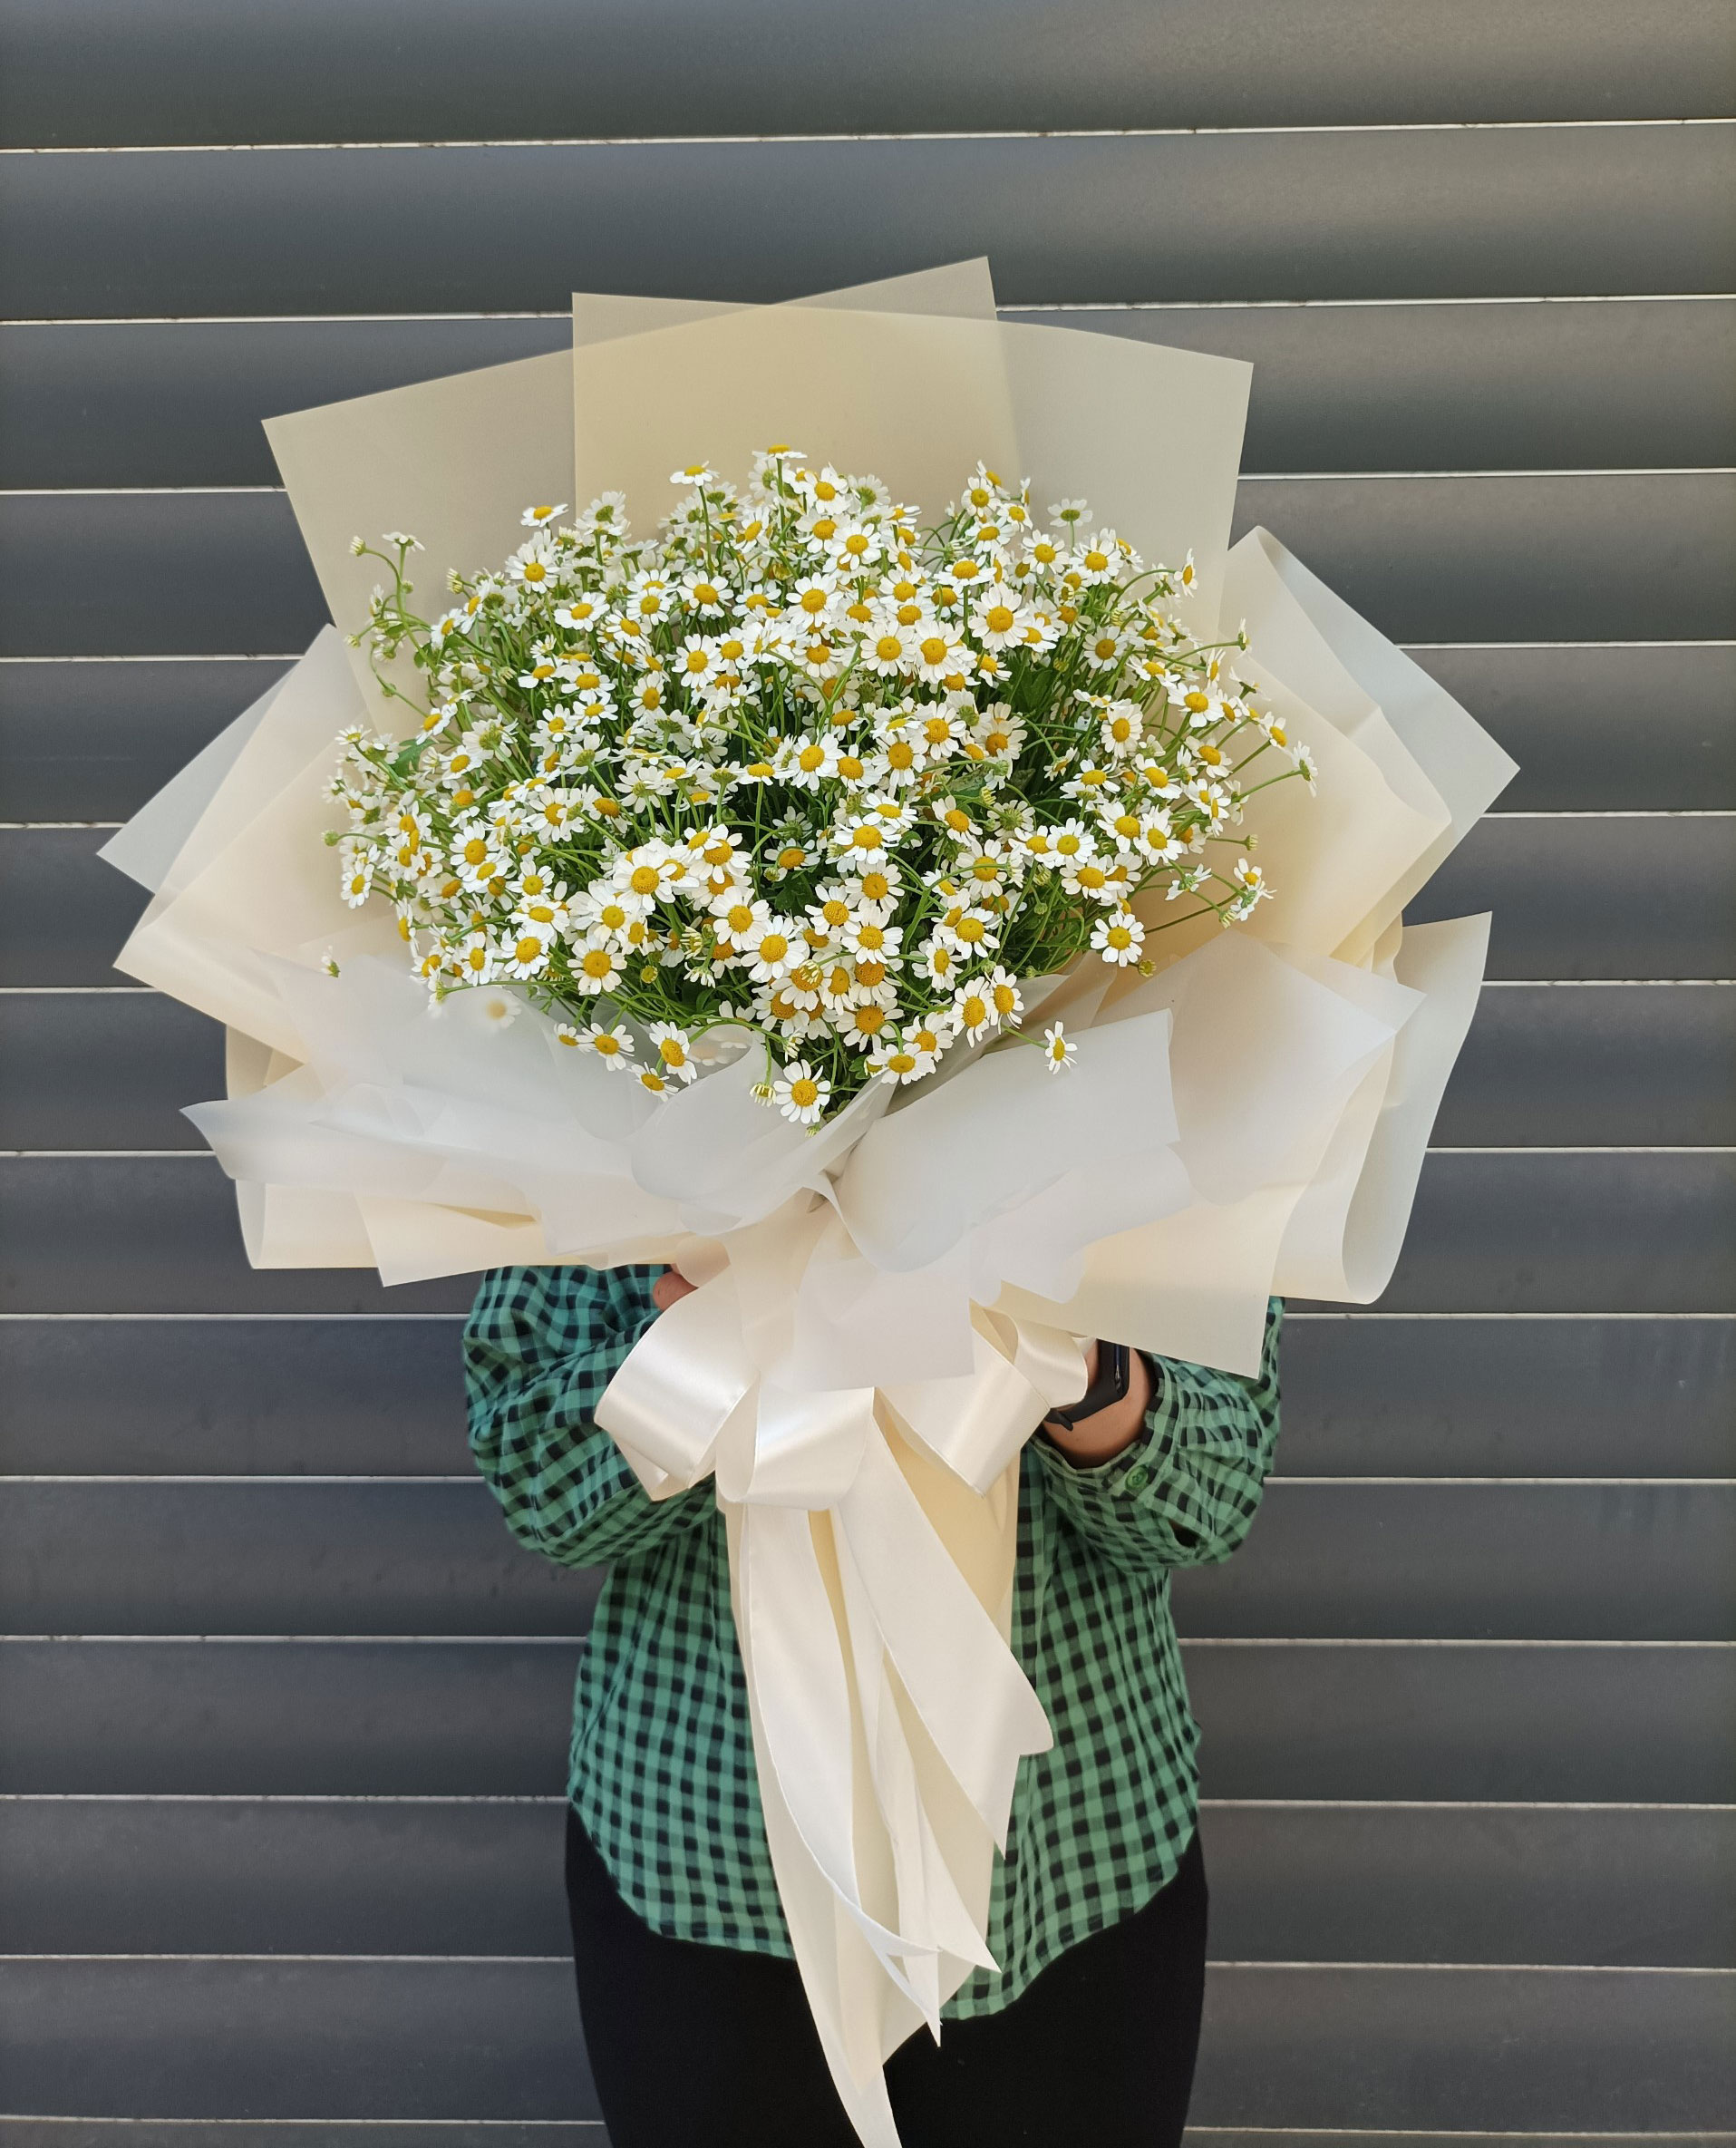 Hoa cúc tana tặng sinh nhật người yêu ngọt ngào